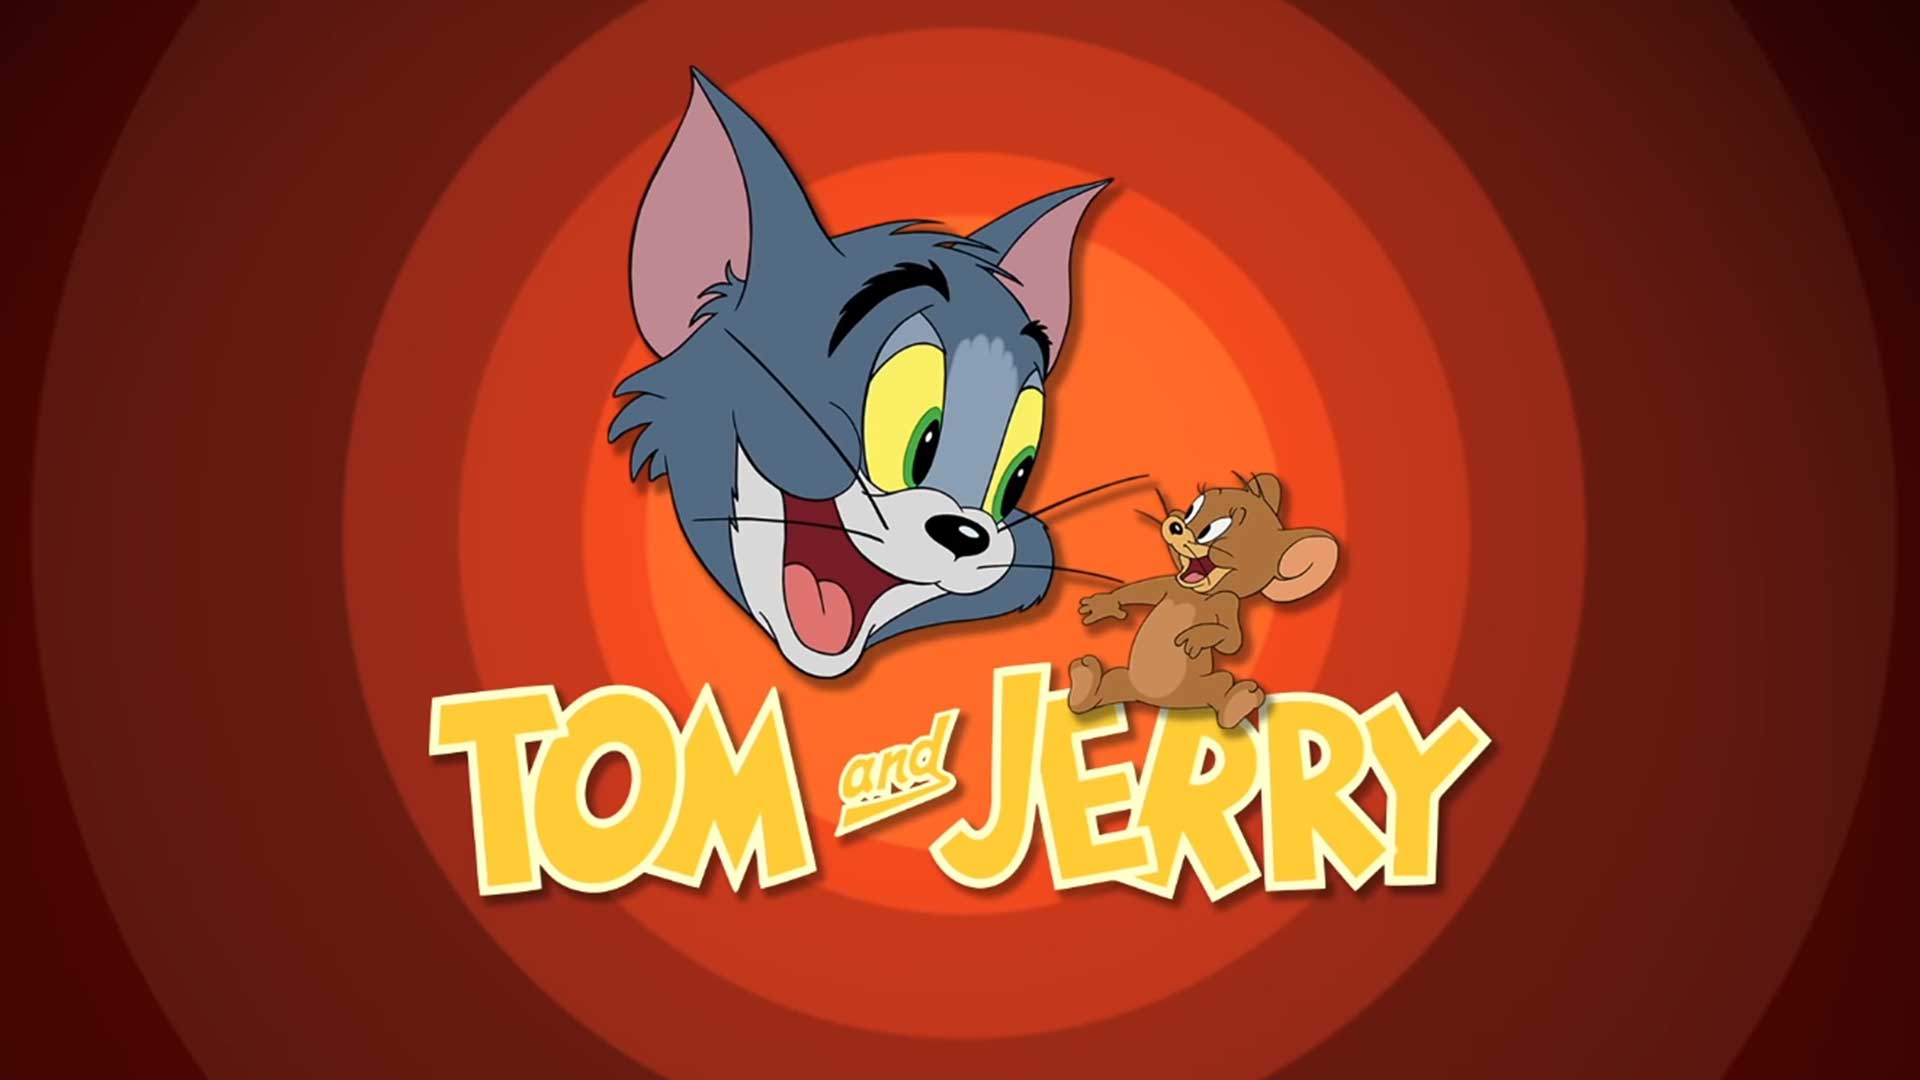 Том и Джерри – 61 серия «Котик, потерявший голову» / Tom and Jerry